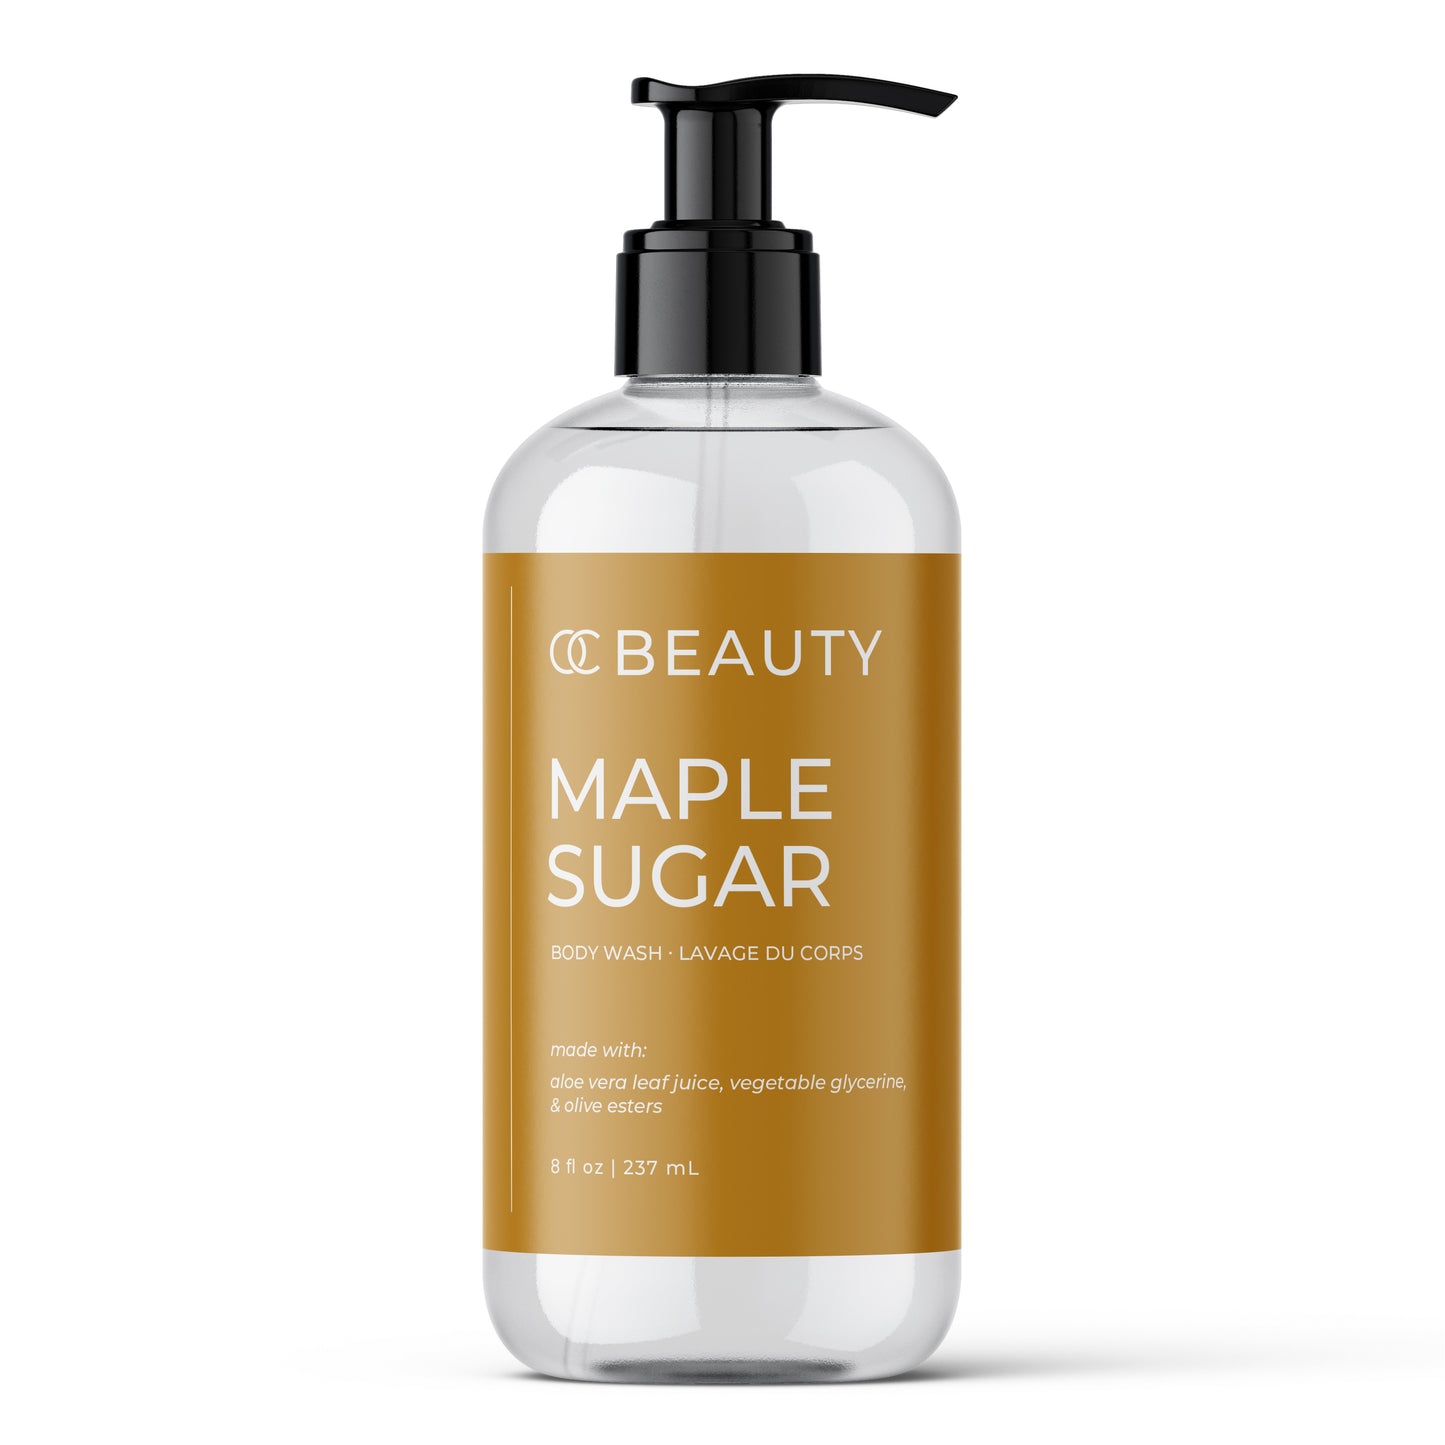 Maple Sugar Liquid Soap